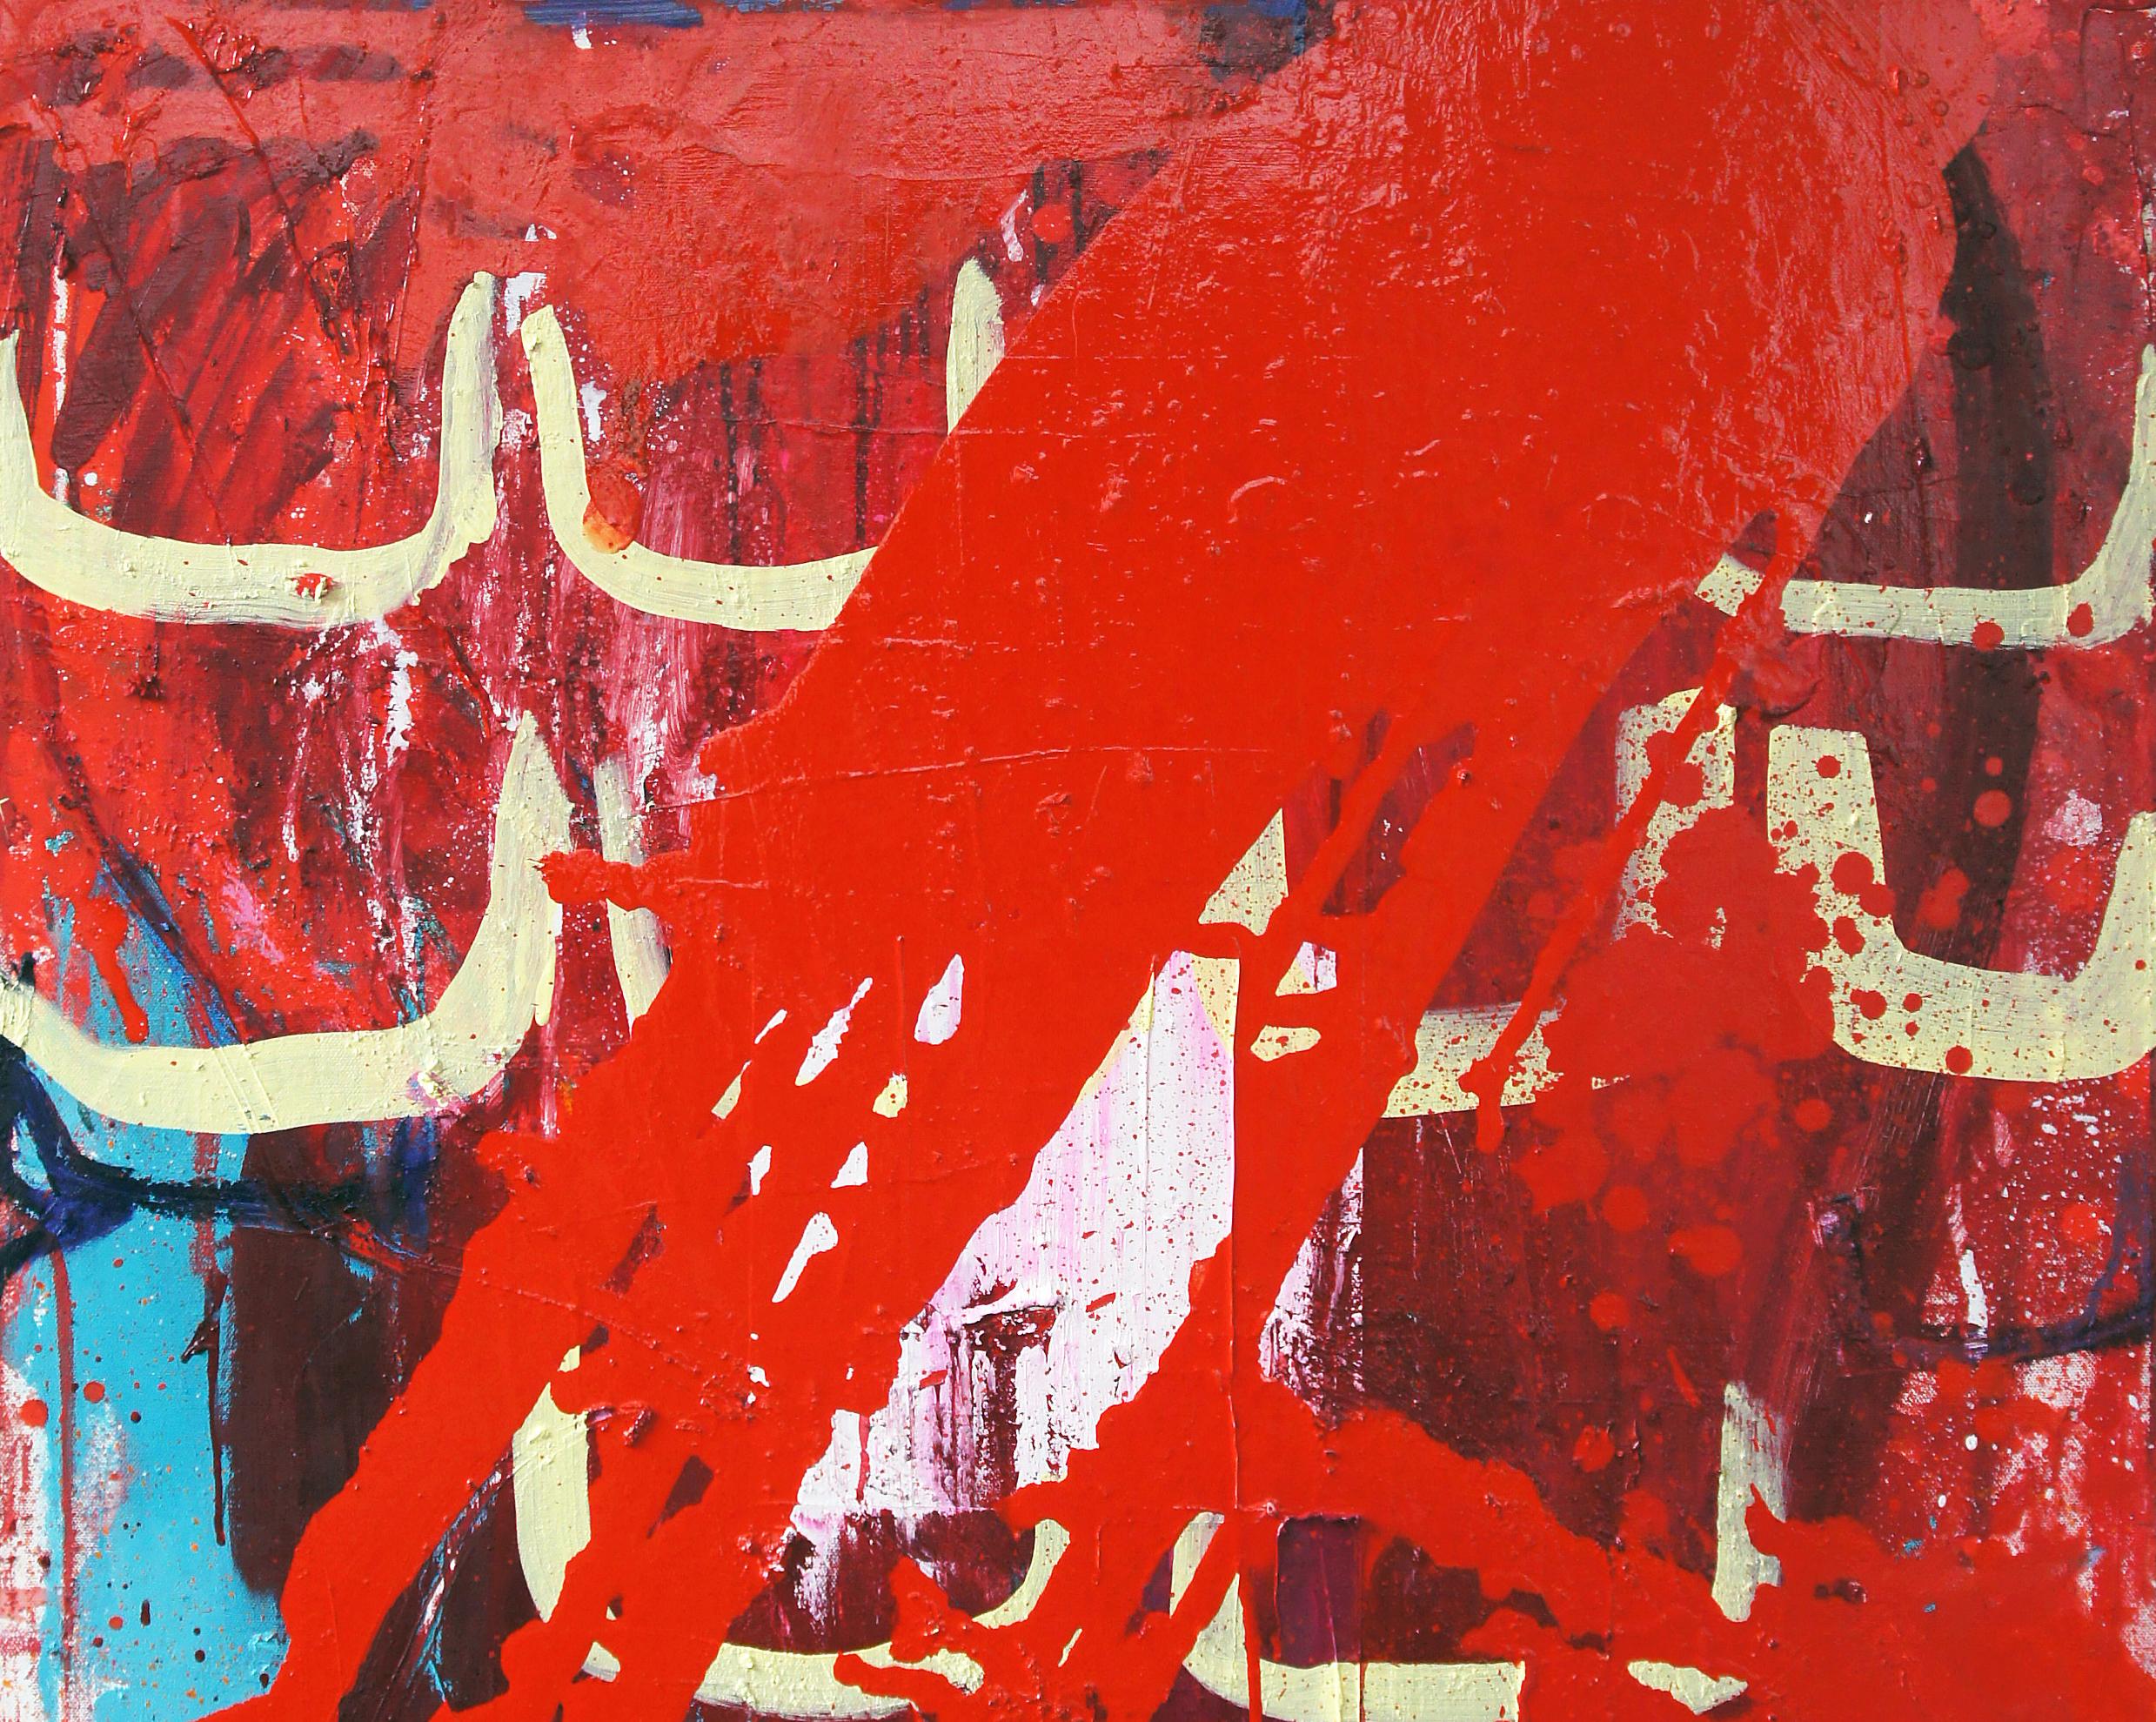 Red Lightning, peinture abstraite contemporaine sur toile d'une artiste japonaise - Painting de Yukari Edamitsu